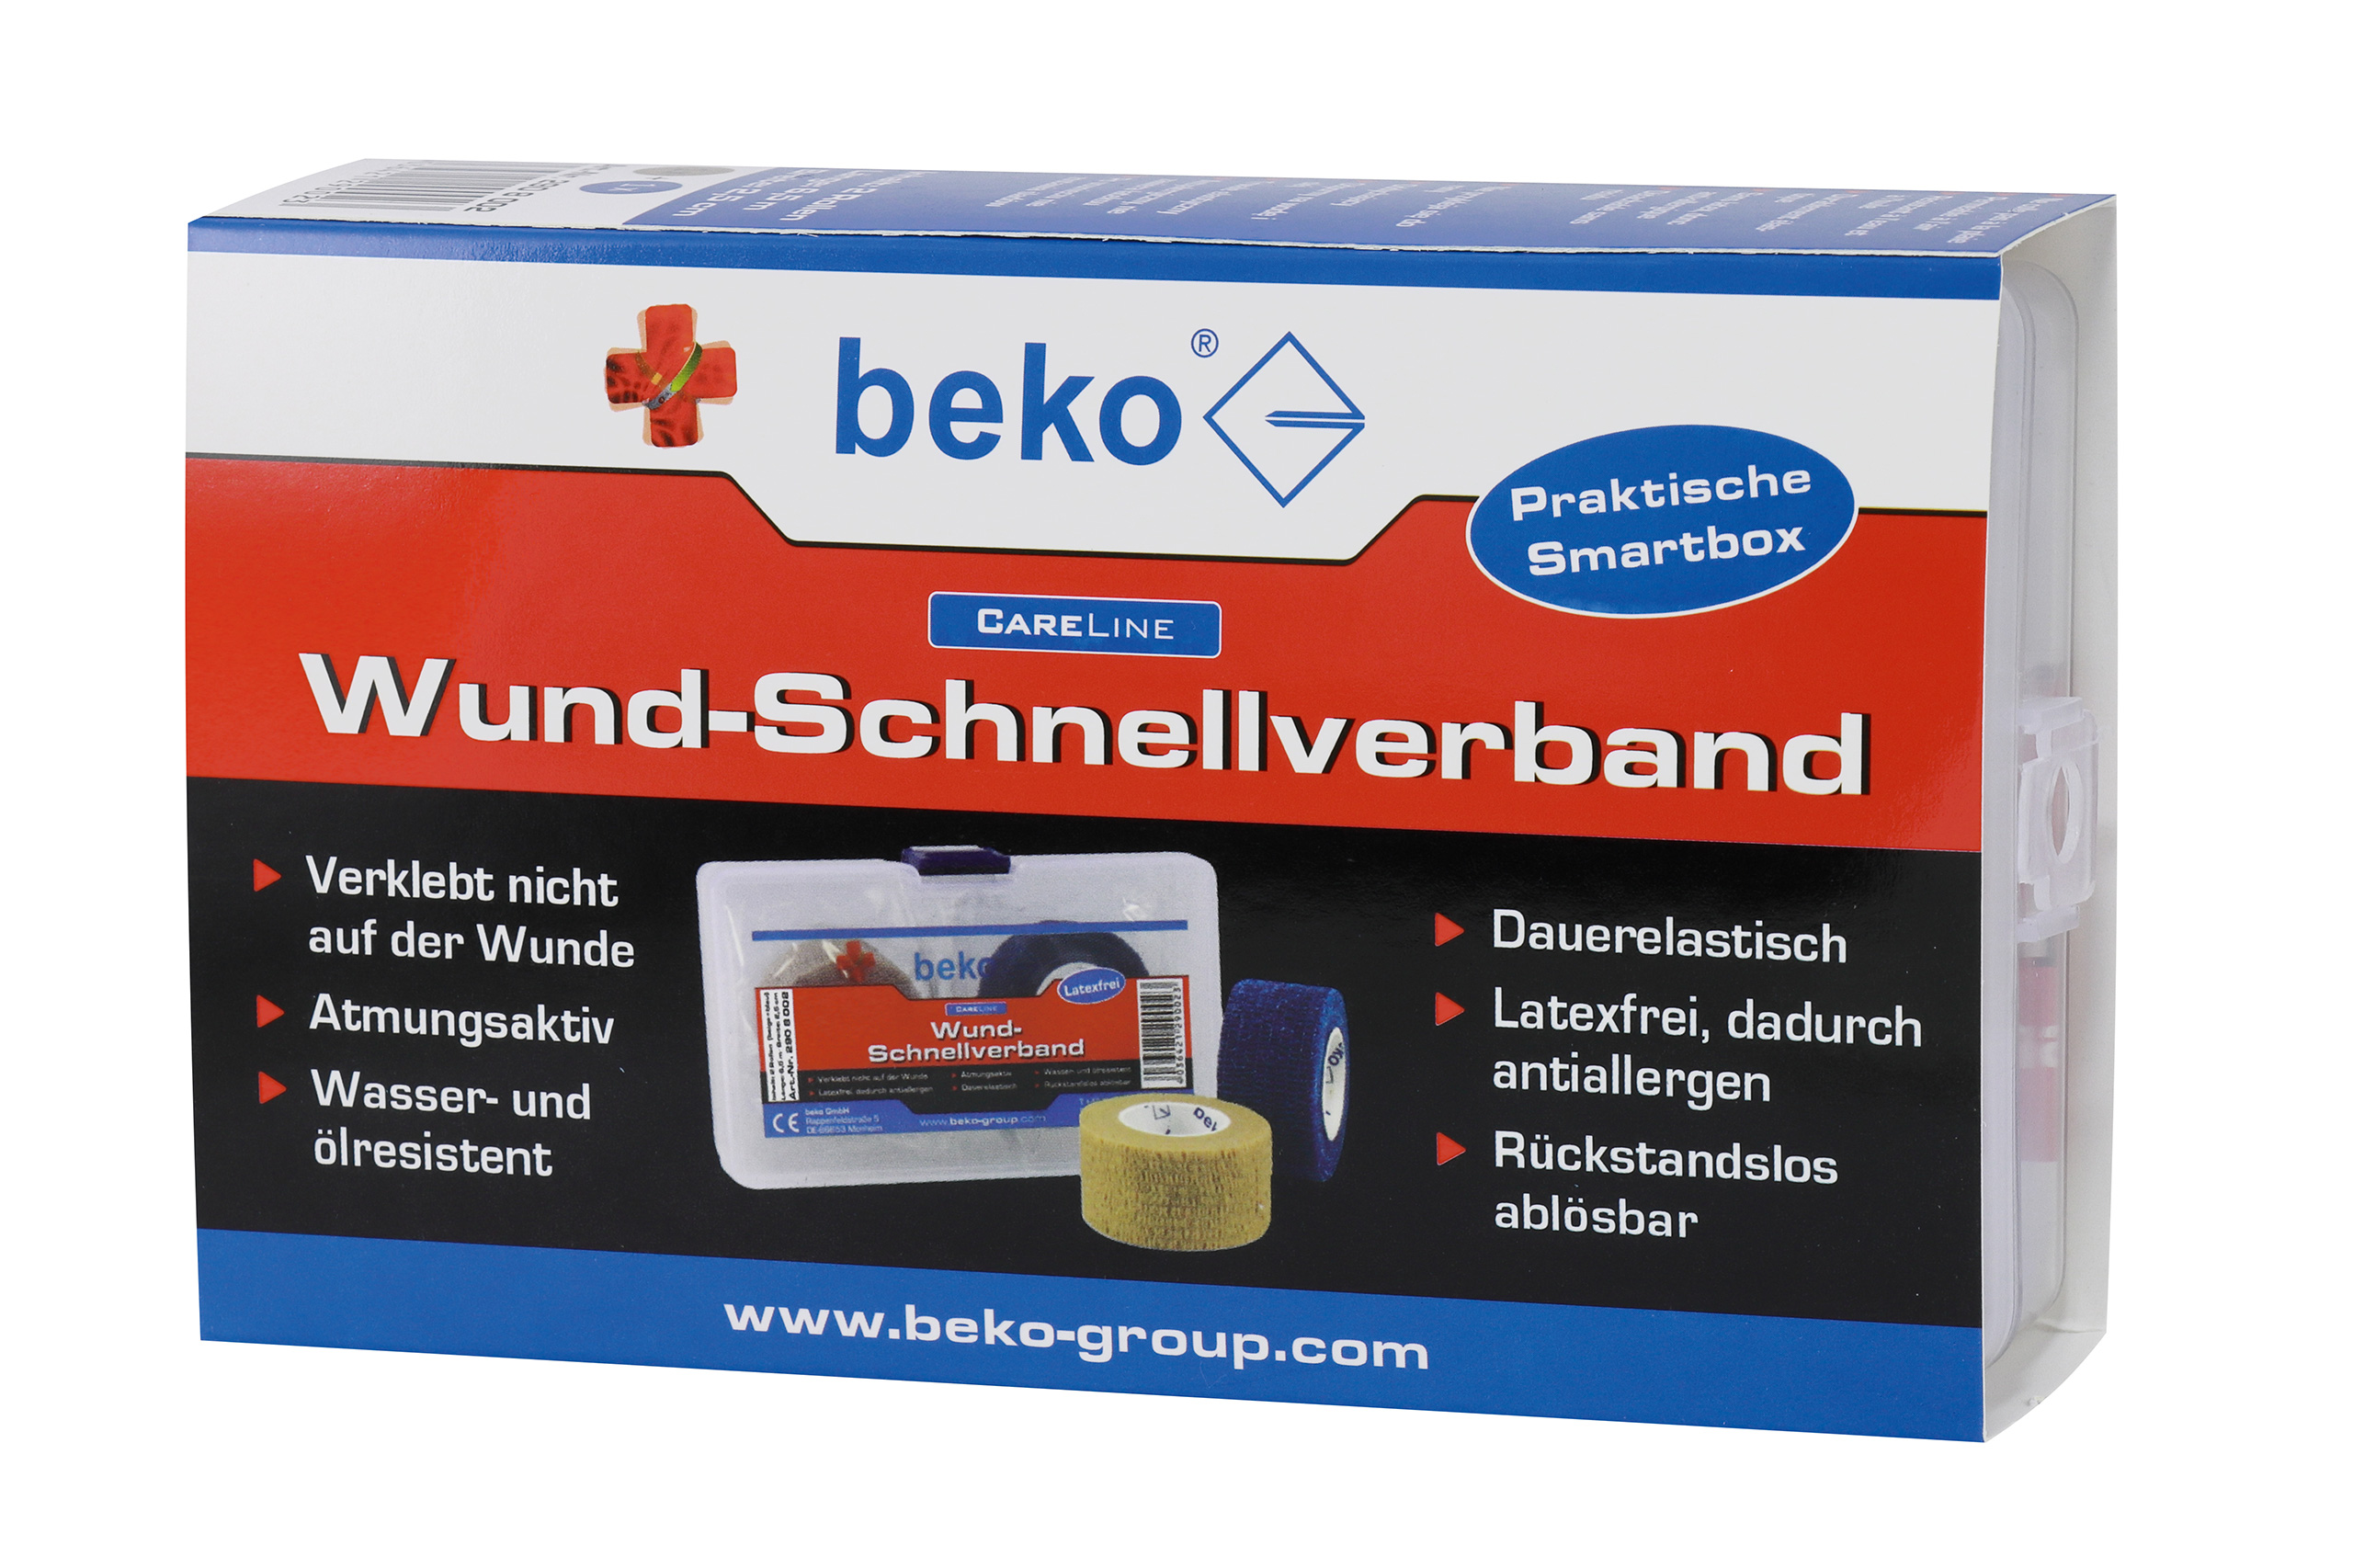 BEKO GMBH - MONHEIM Wund-Schnellverband Box CareLine beige/blau, 2 Rollen 25mmx4,5m